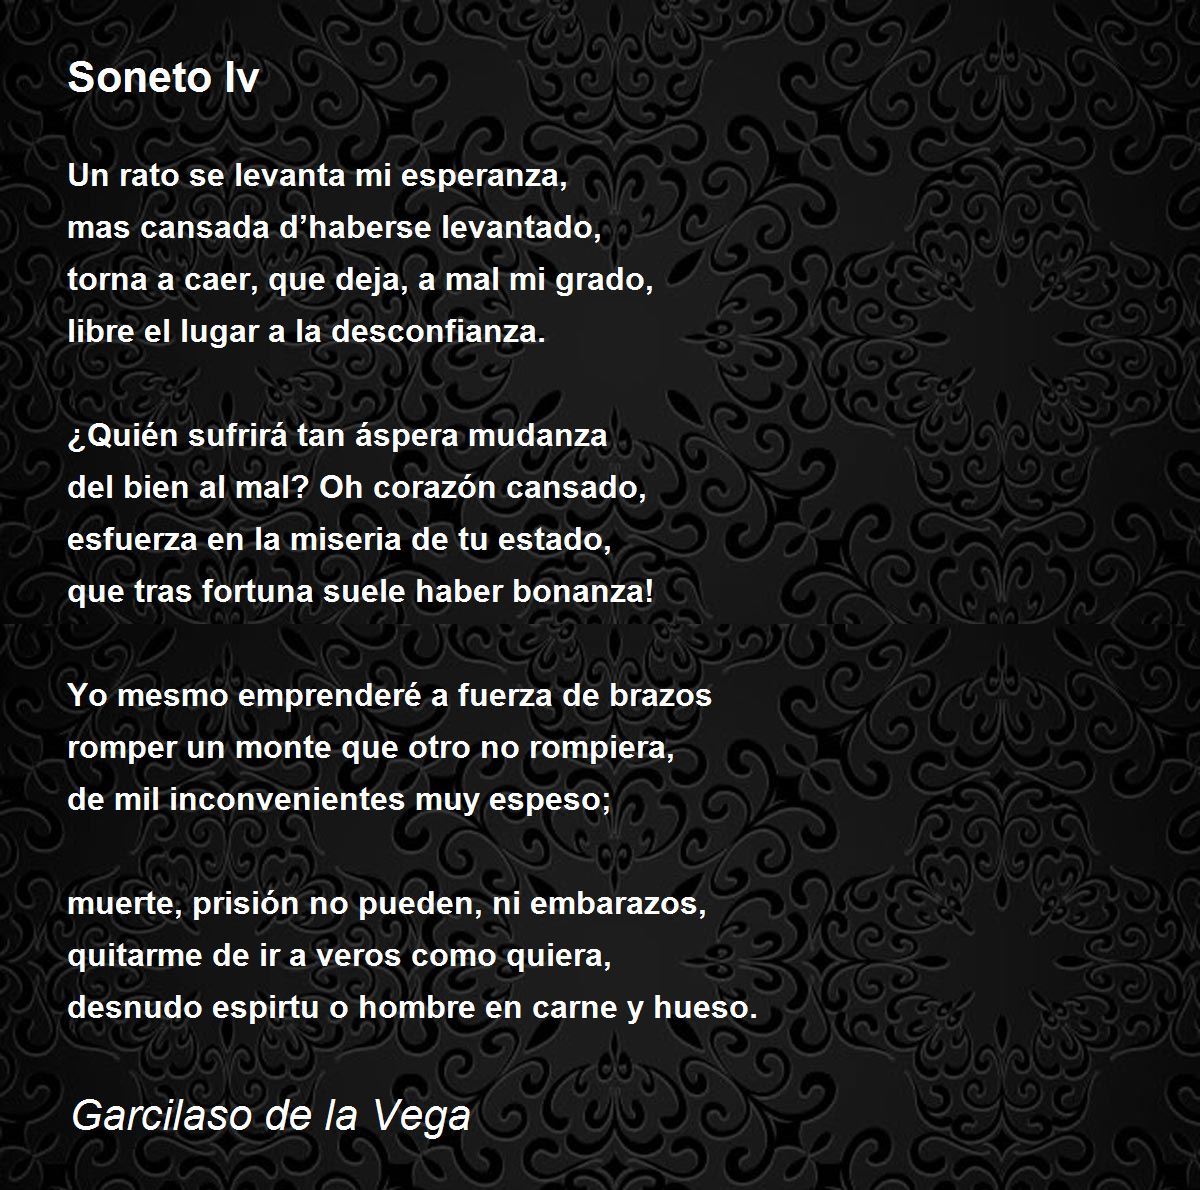 Soneto Iv Poem by Garcilaso de la Vega - Poem Hunter